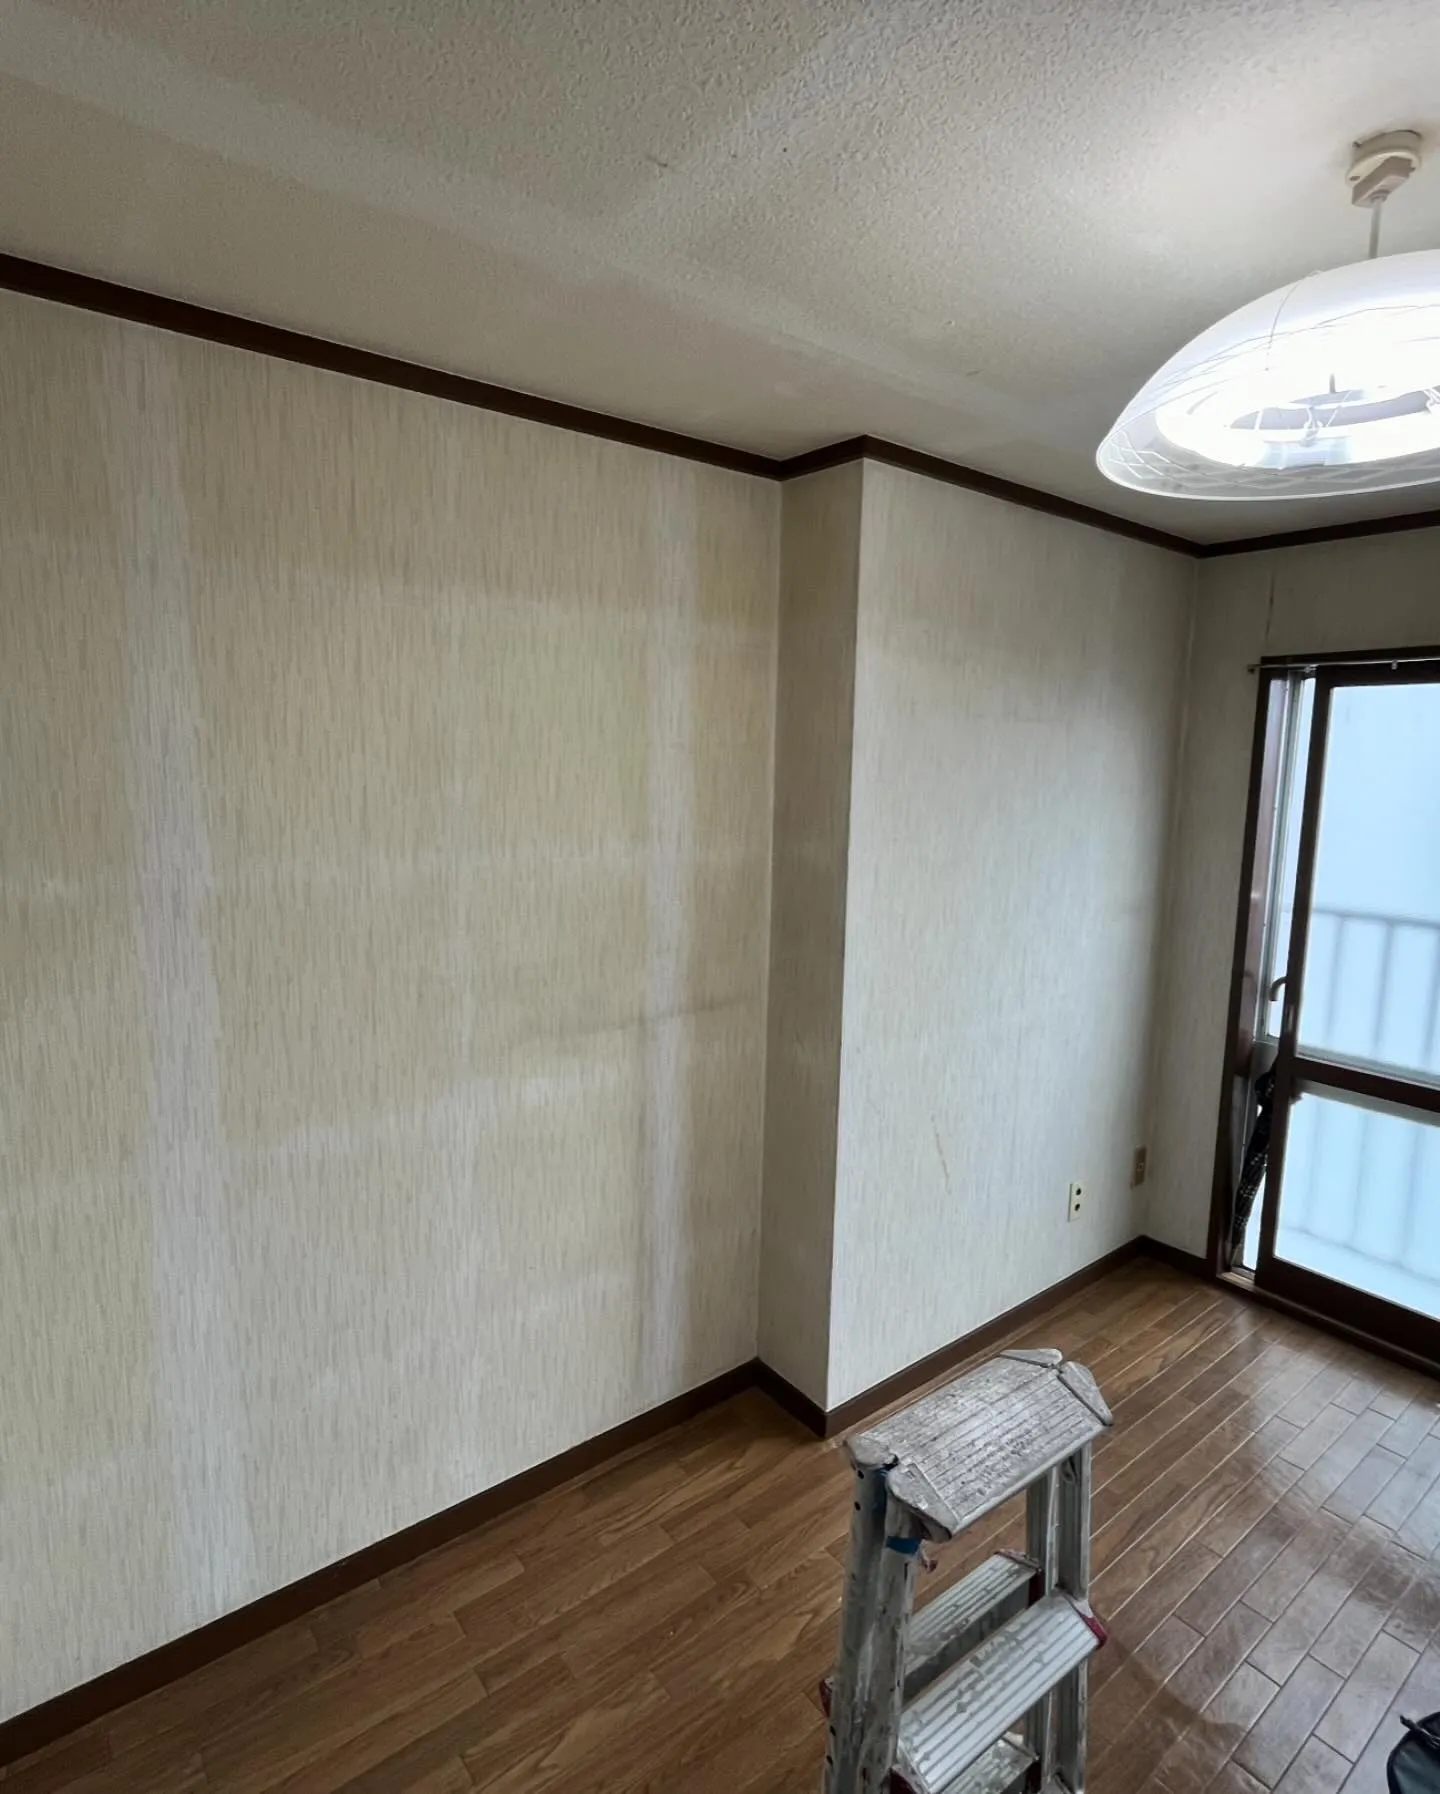 市川市行徳の空室3DKアパートの壁紙再生完了✅